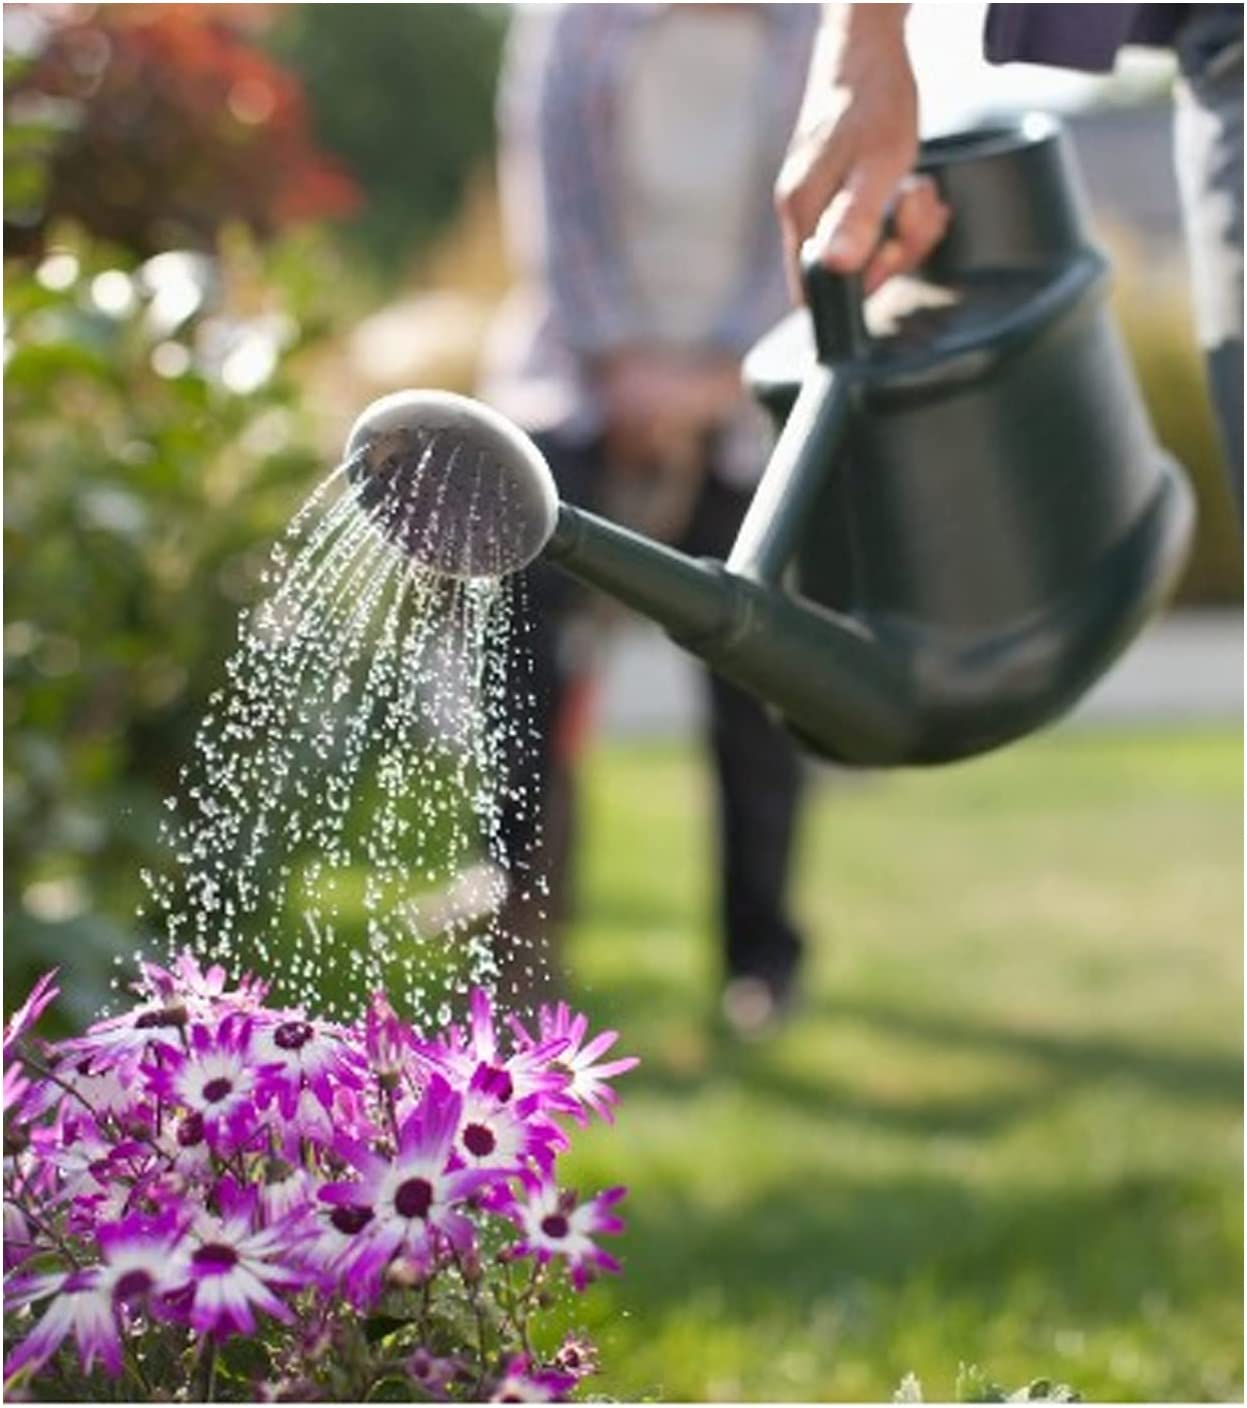 Strong 6 Litre Green Indoor & Outdoor Garden Watering Can Complete With Detachable Sprinkler Head & Handle